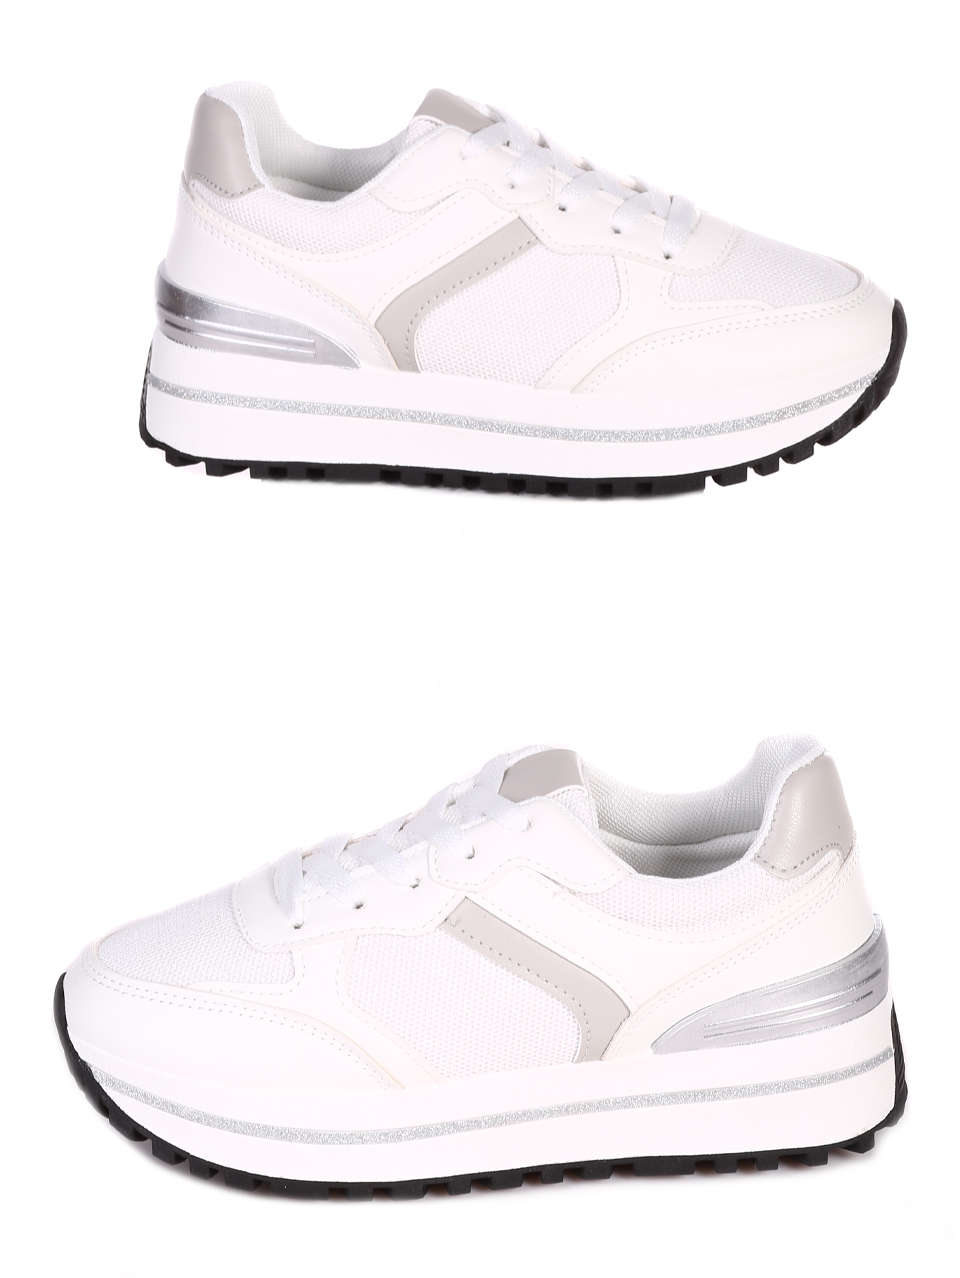 Ежедневни дамски комфортни обувки в бяло 3U-23062 white